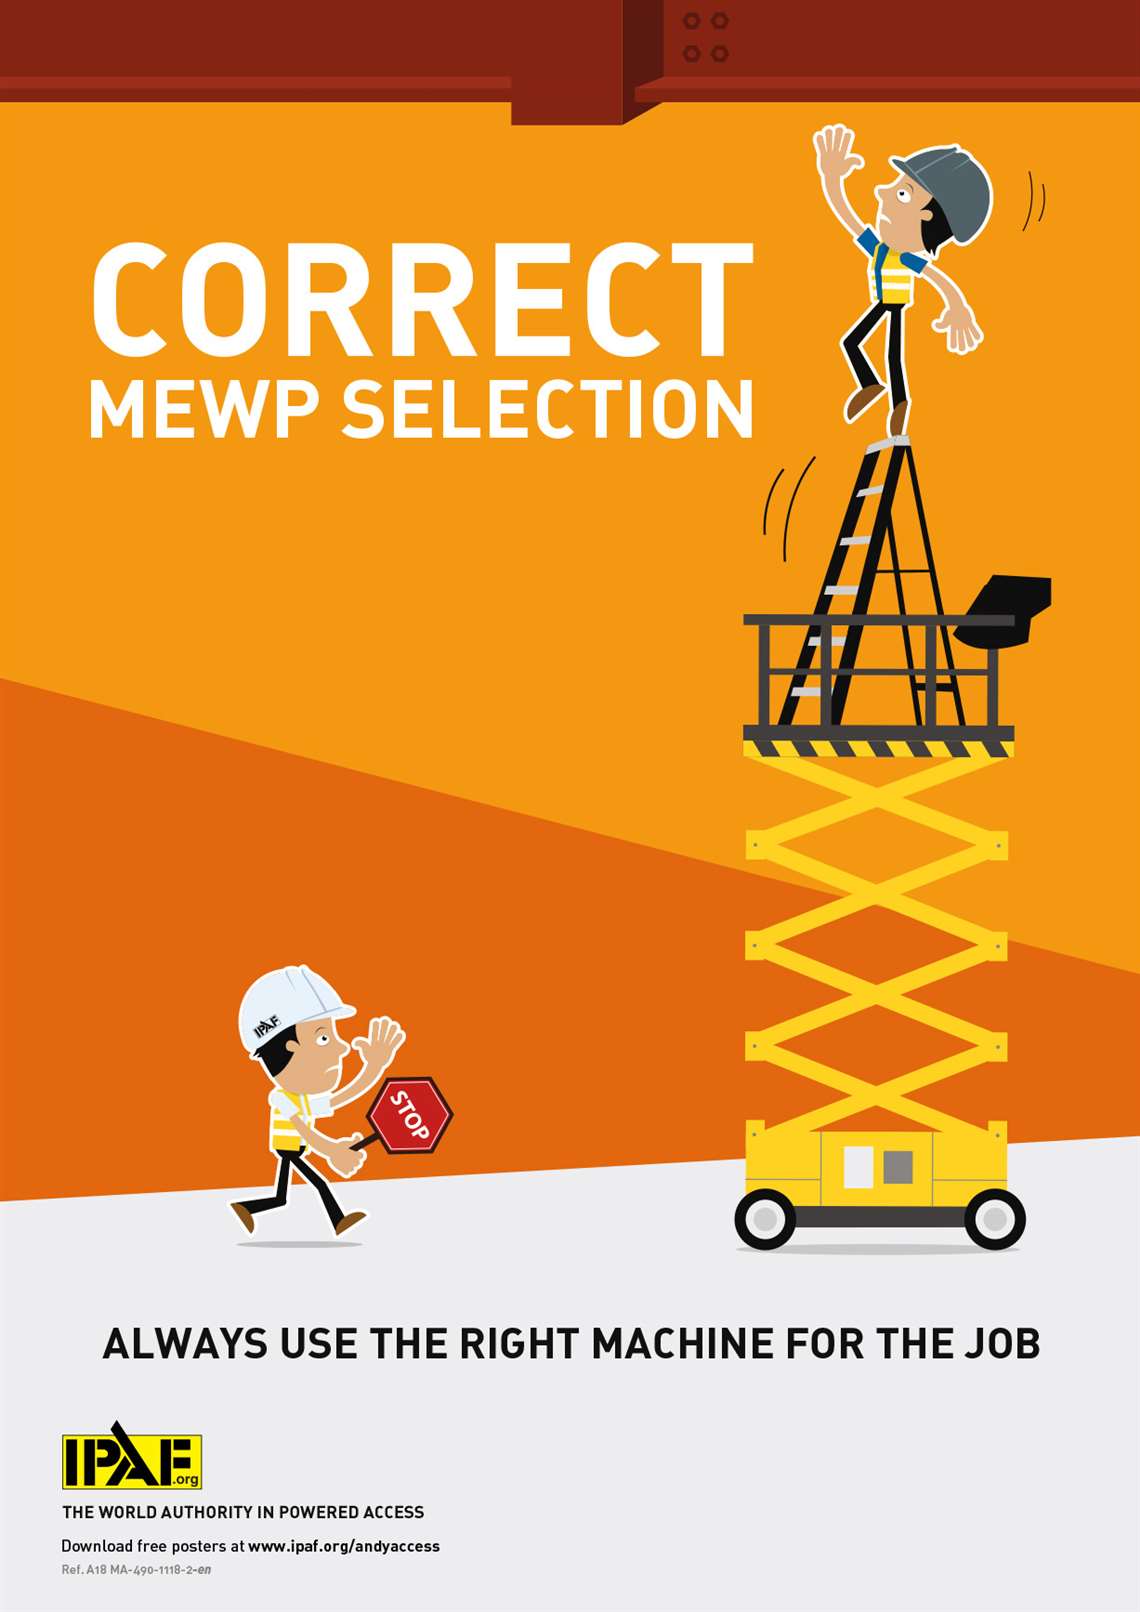 IPAF Correct MEWP Selection